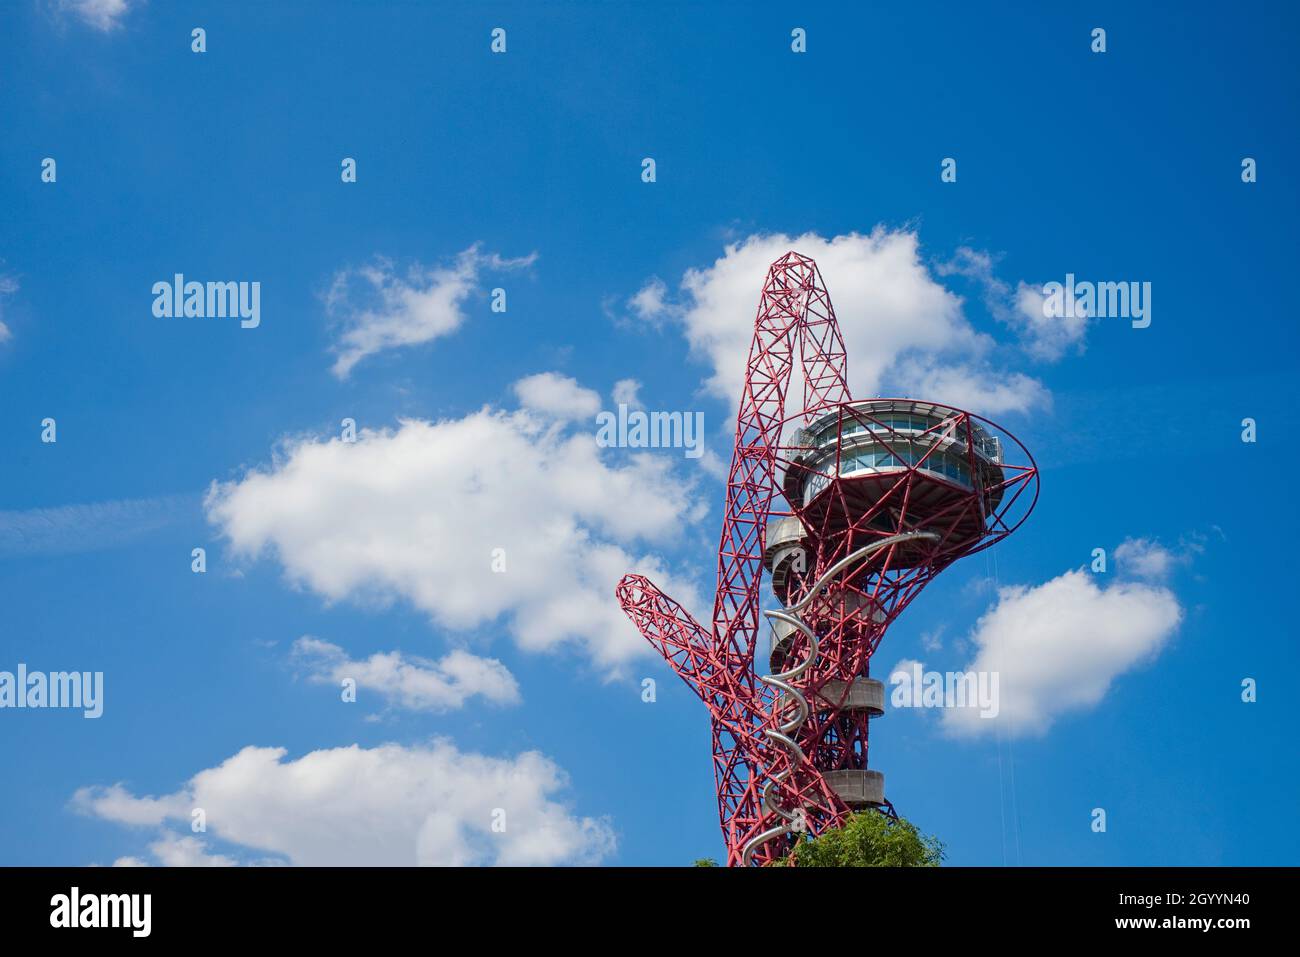 L'ArcelorMittal Orbit è una torre di osservazione e scultura alta 114.5 metri situata nel Queen Elizabeth Olympic Park di Stratford, Londra. Foto Stock